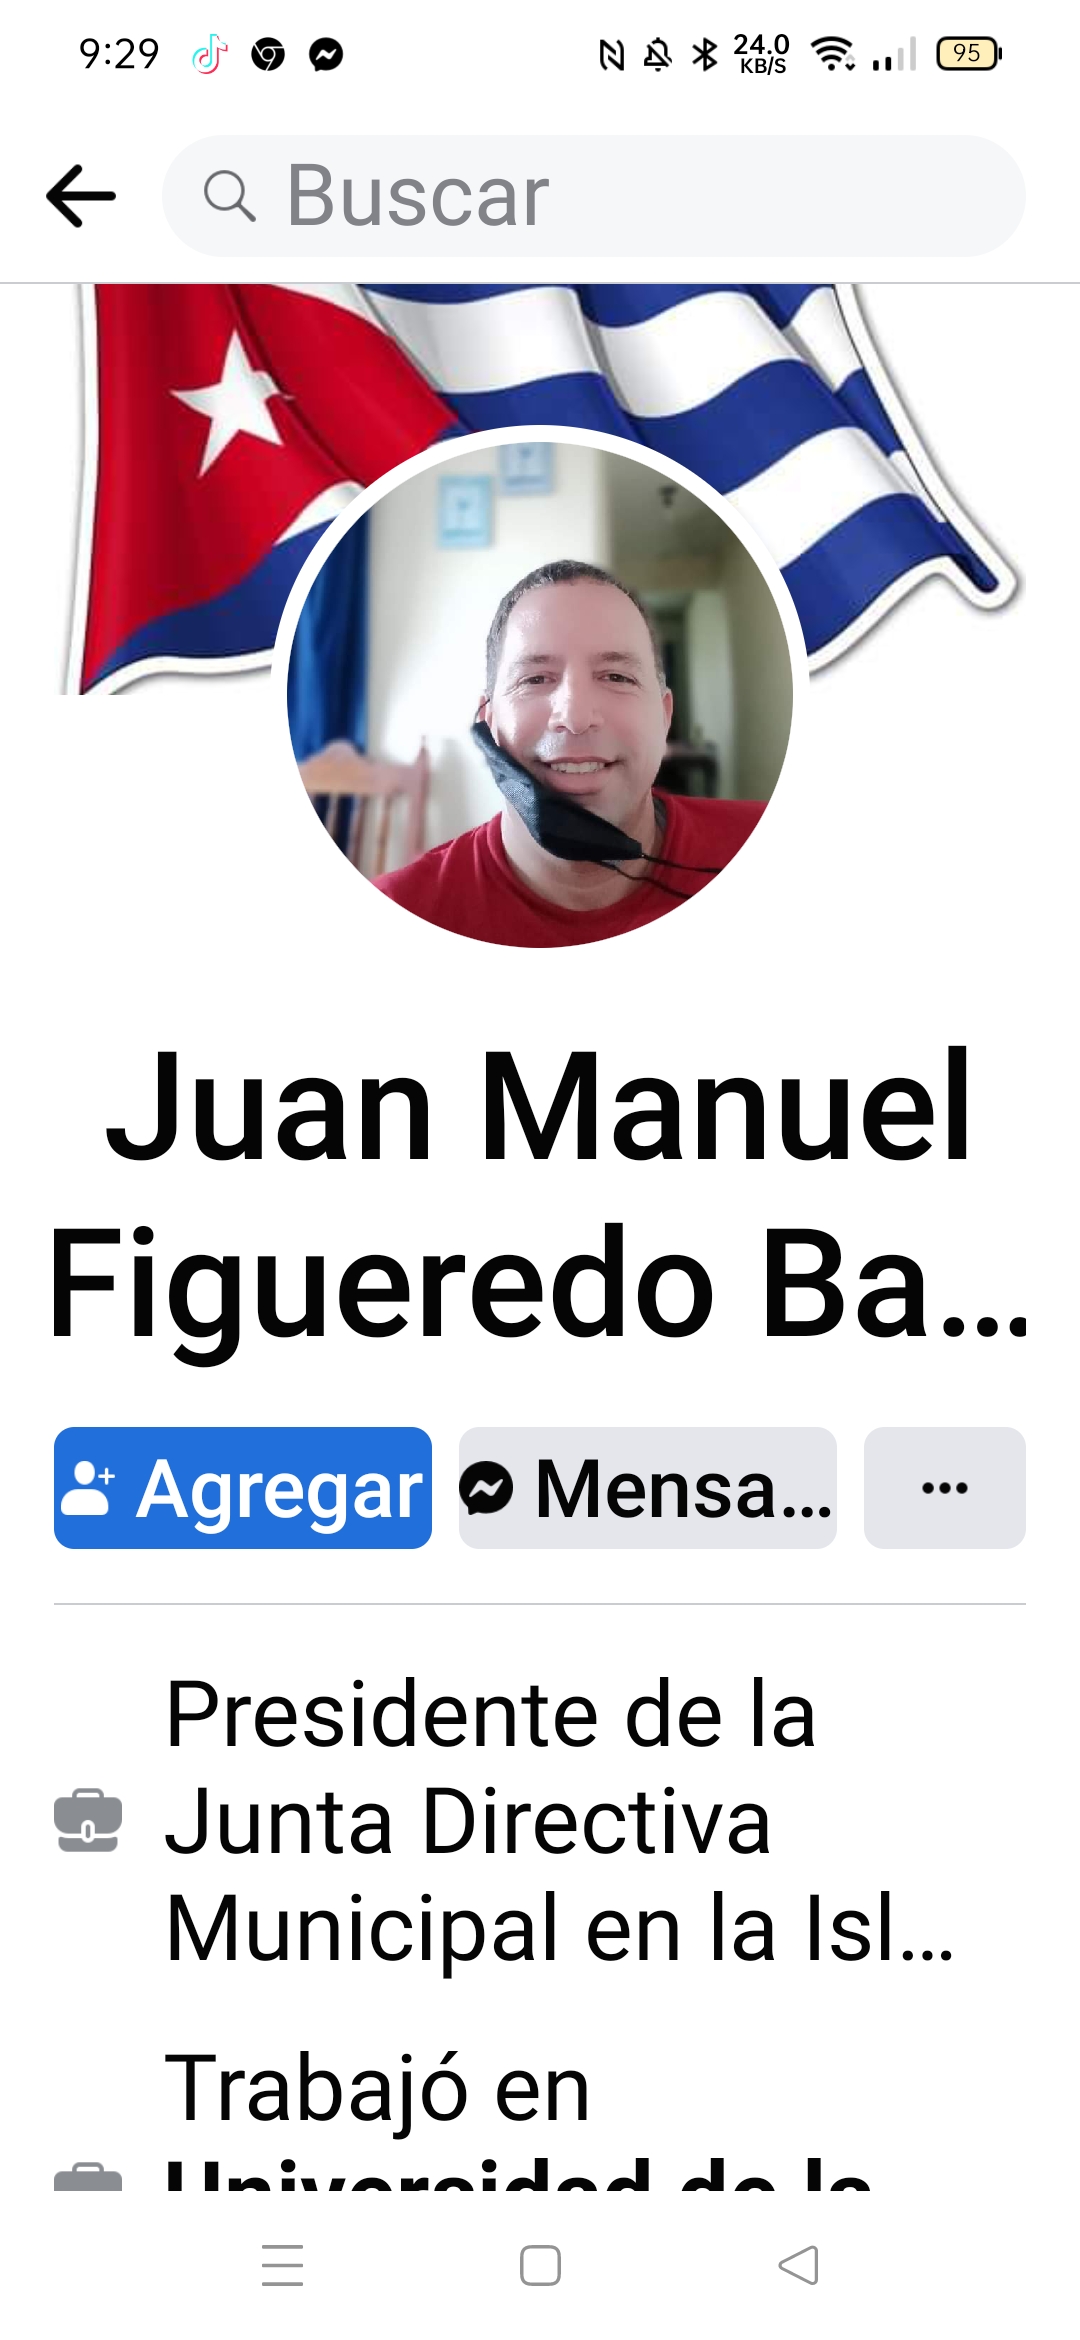 Juan Manuel Figueredo baños